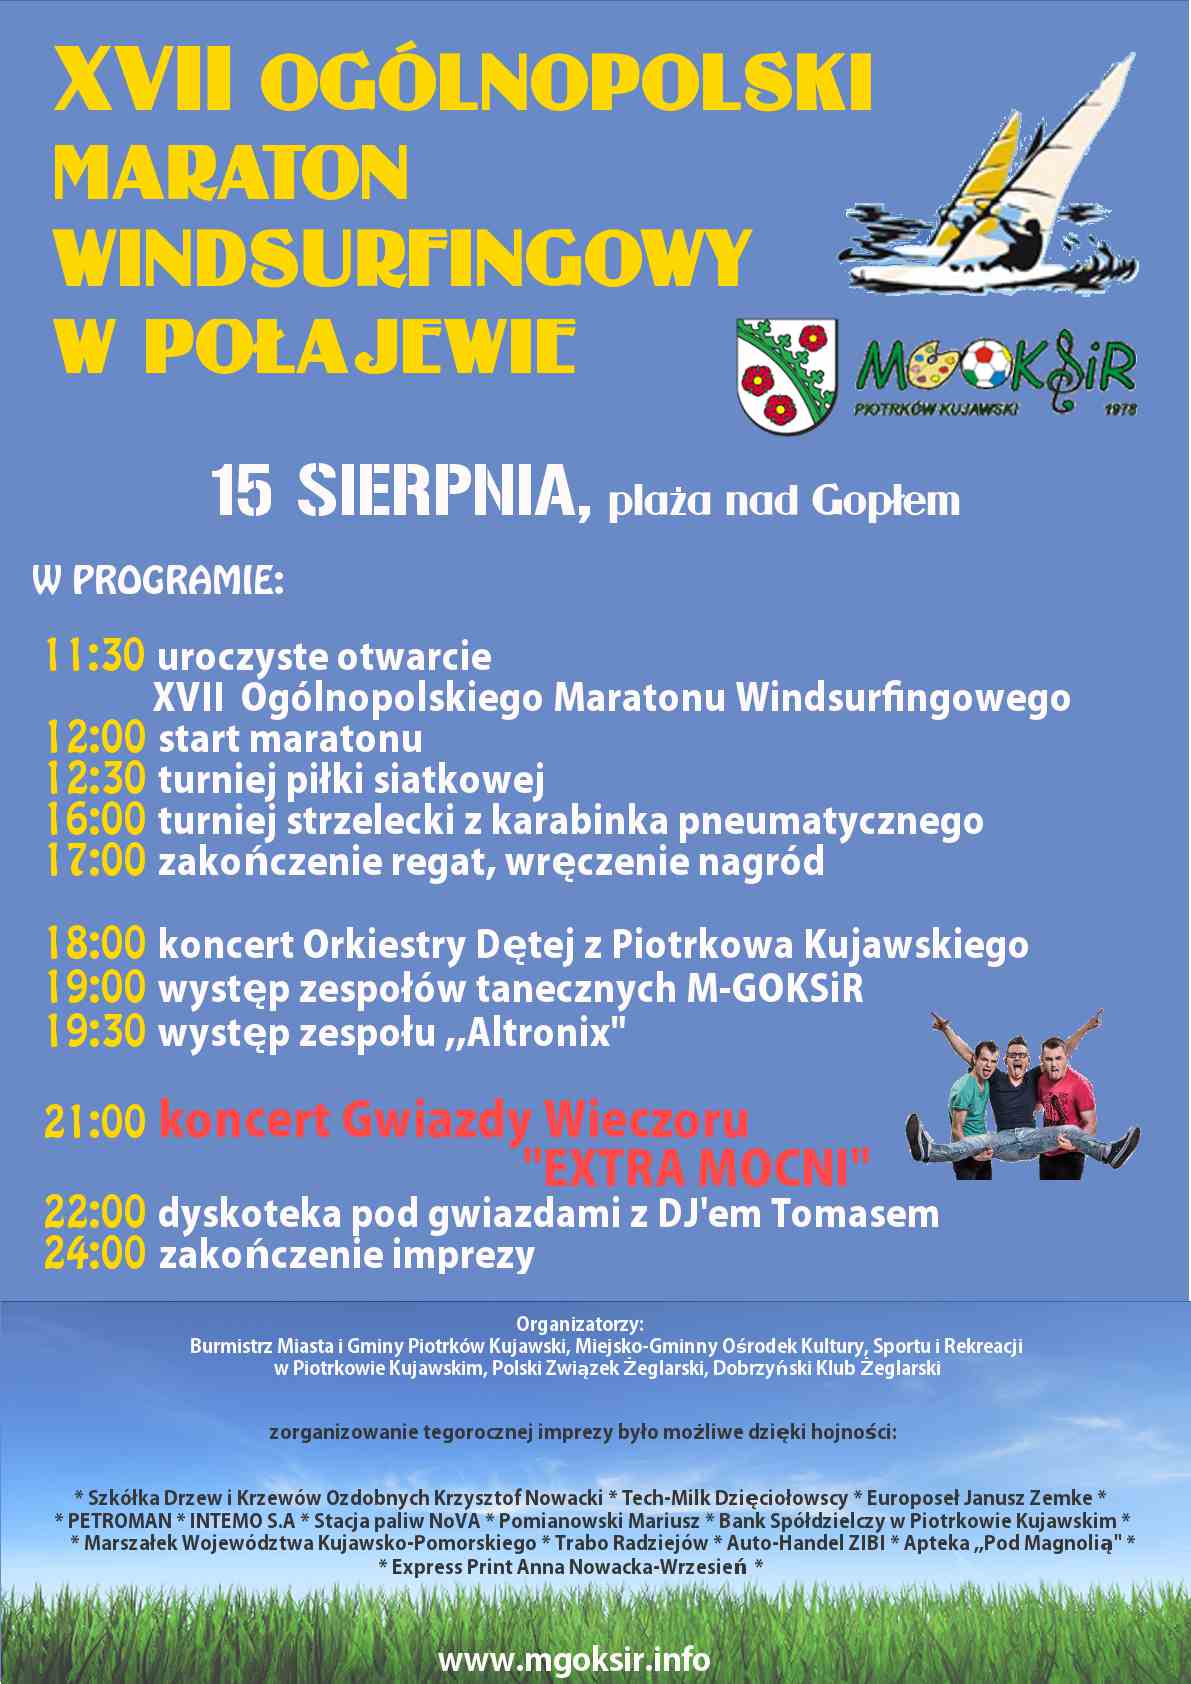 Serdecznie zapraszamy na XVII Ogólnopolski Maraton Windsurfingowy Połajewo 2015